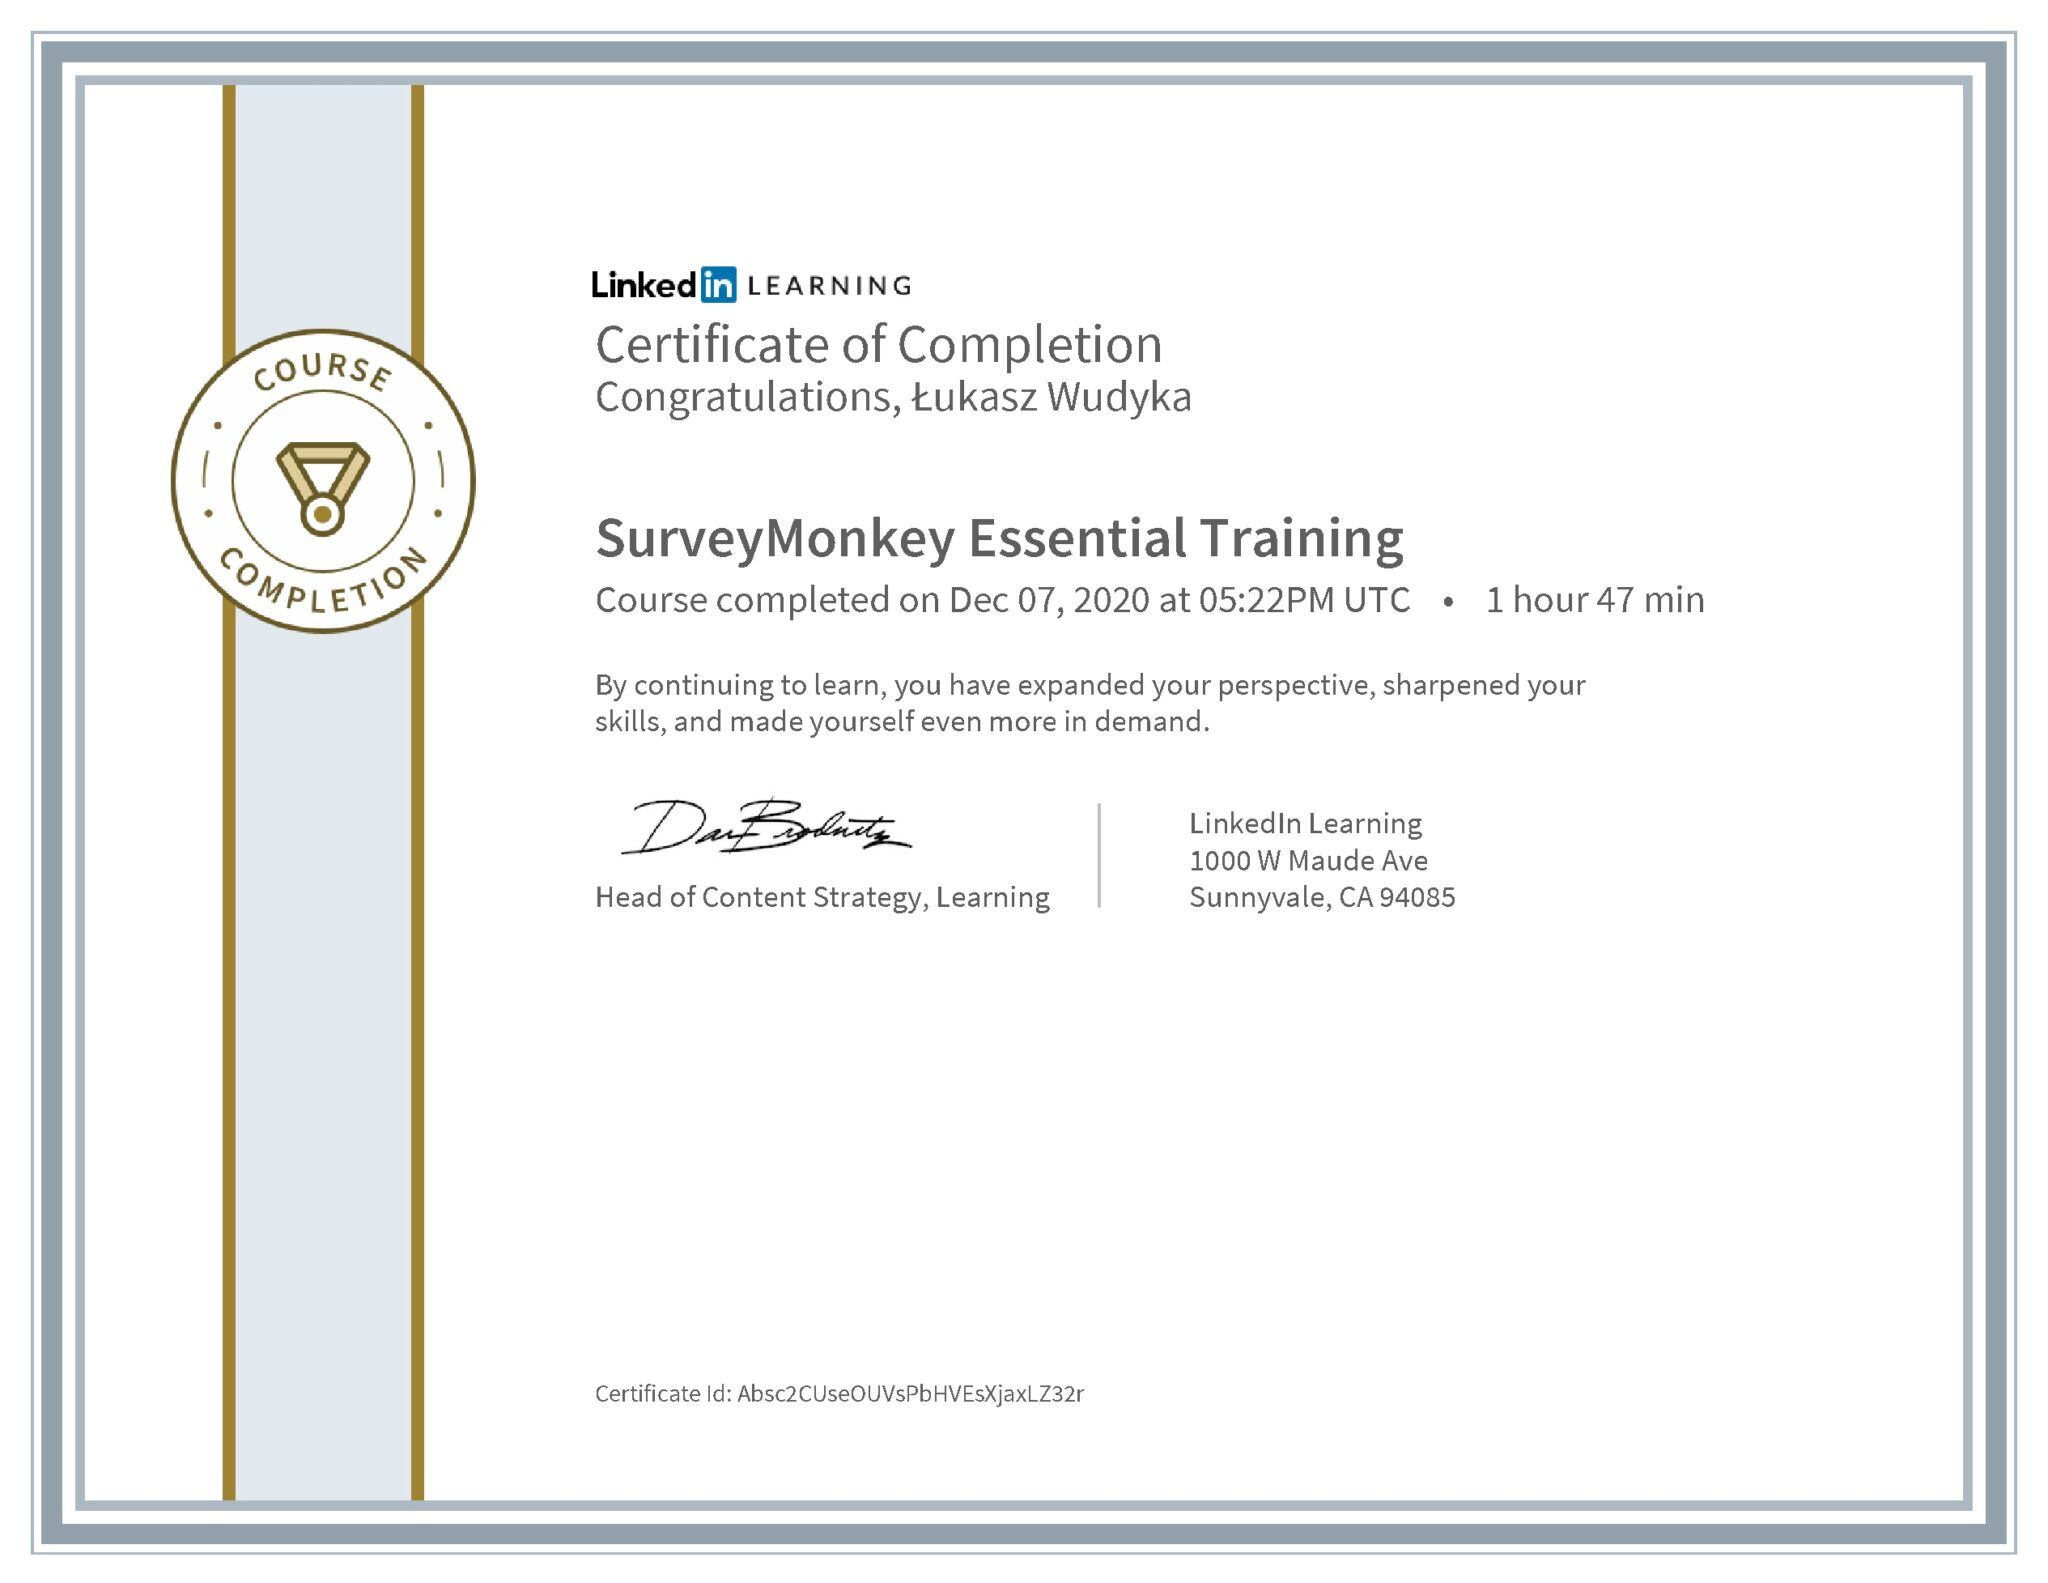 Łukasz Wudyka certyfikat LinkedIn SurveyMonkey Essential Training